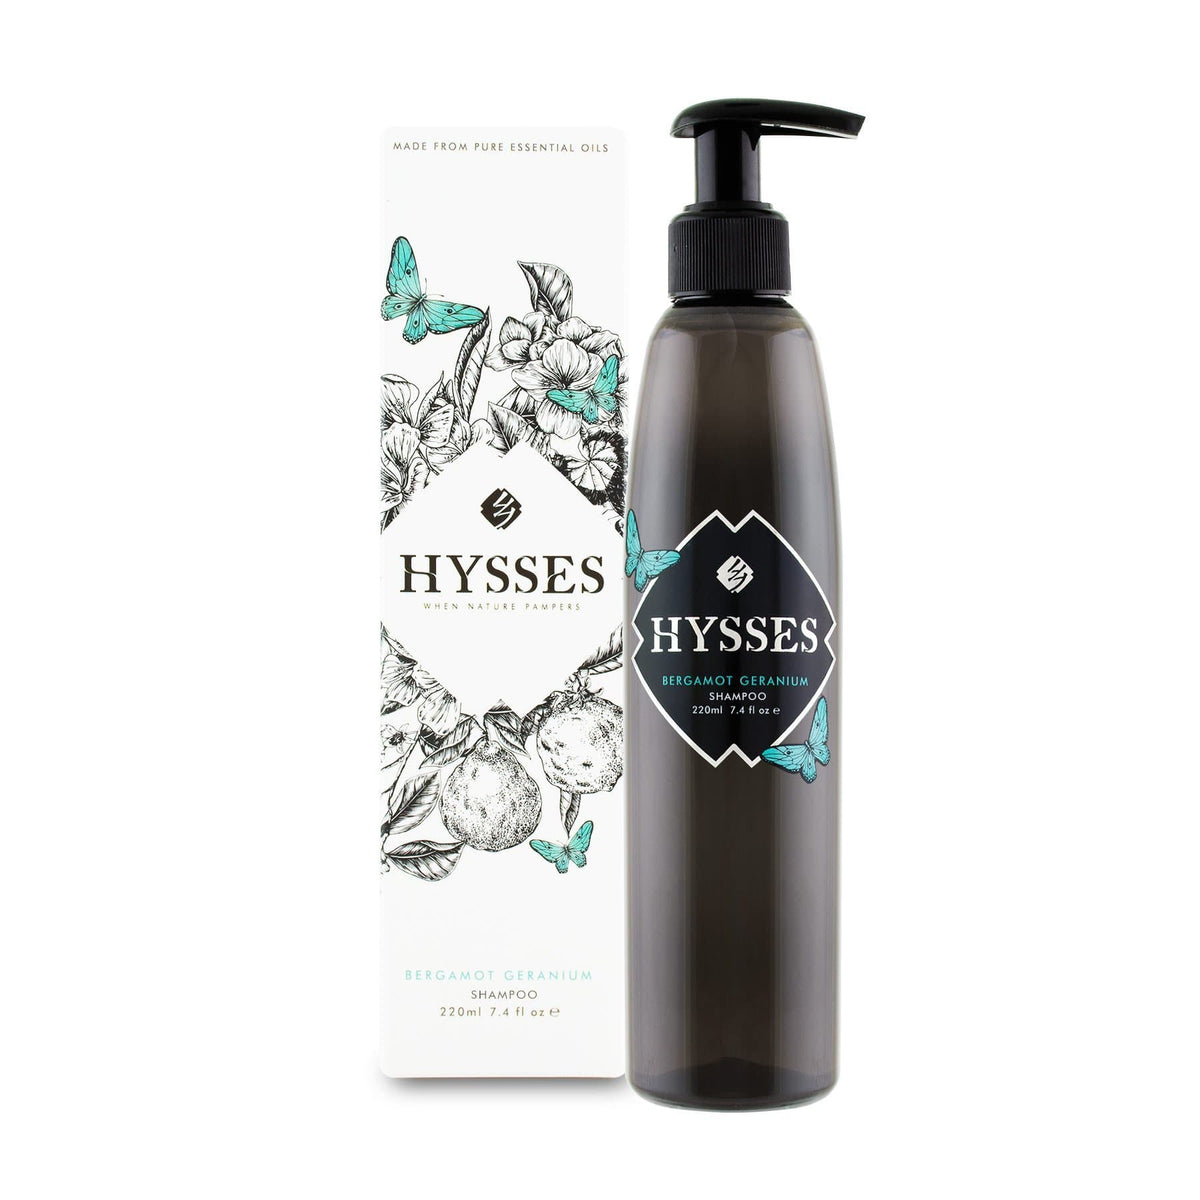 Hysses Hair Care 220ml Shampoo Bergamot Geranium